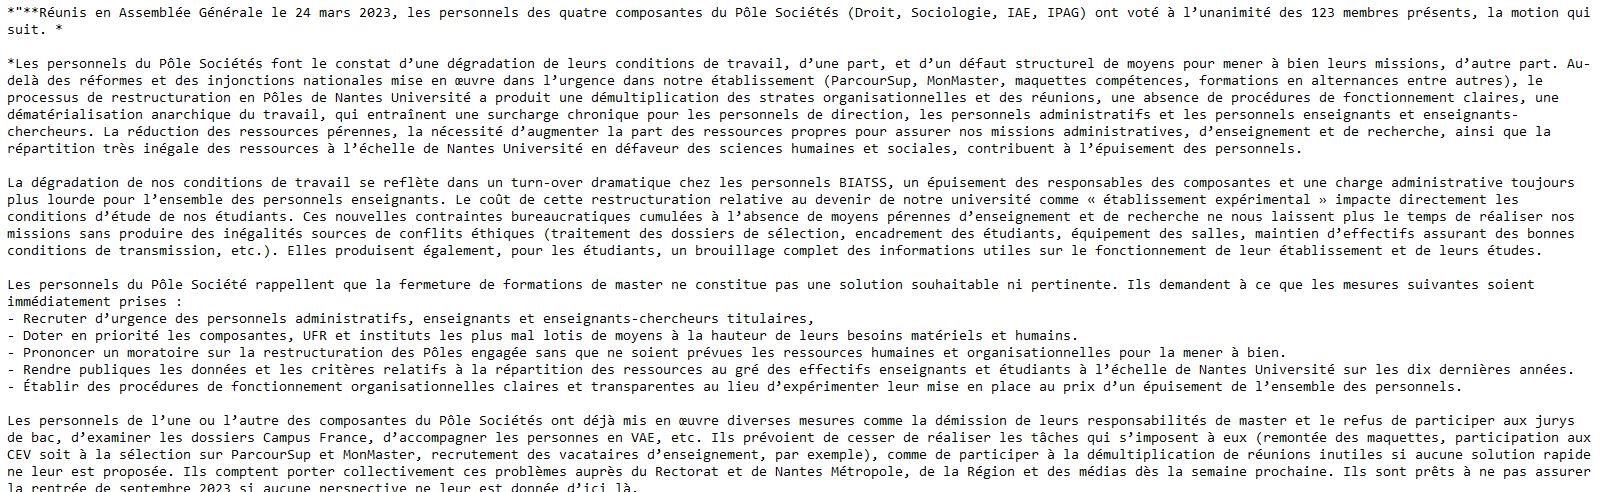 « Pour la faculté de droit et sciences pol de Nantes, le burn-out, c'est aujourd'hui » Motion10